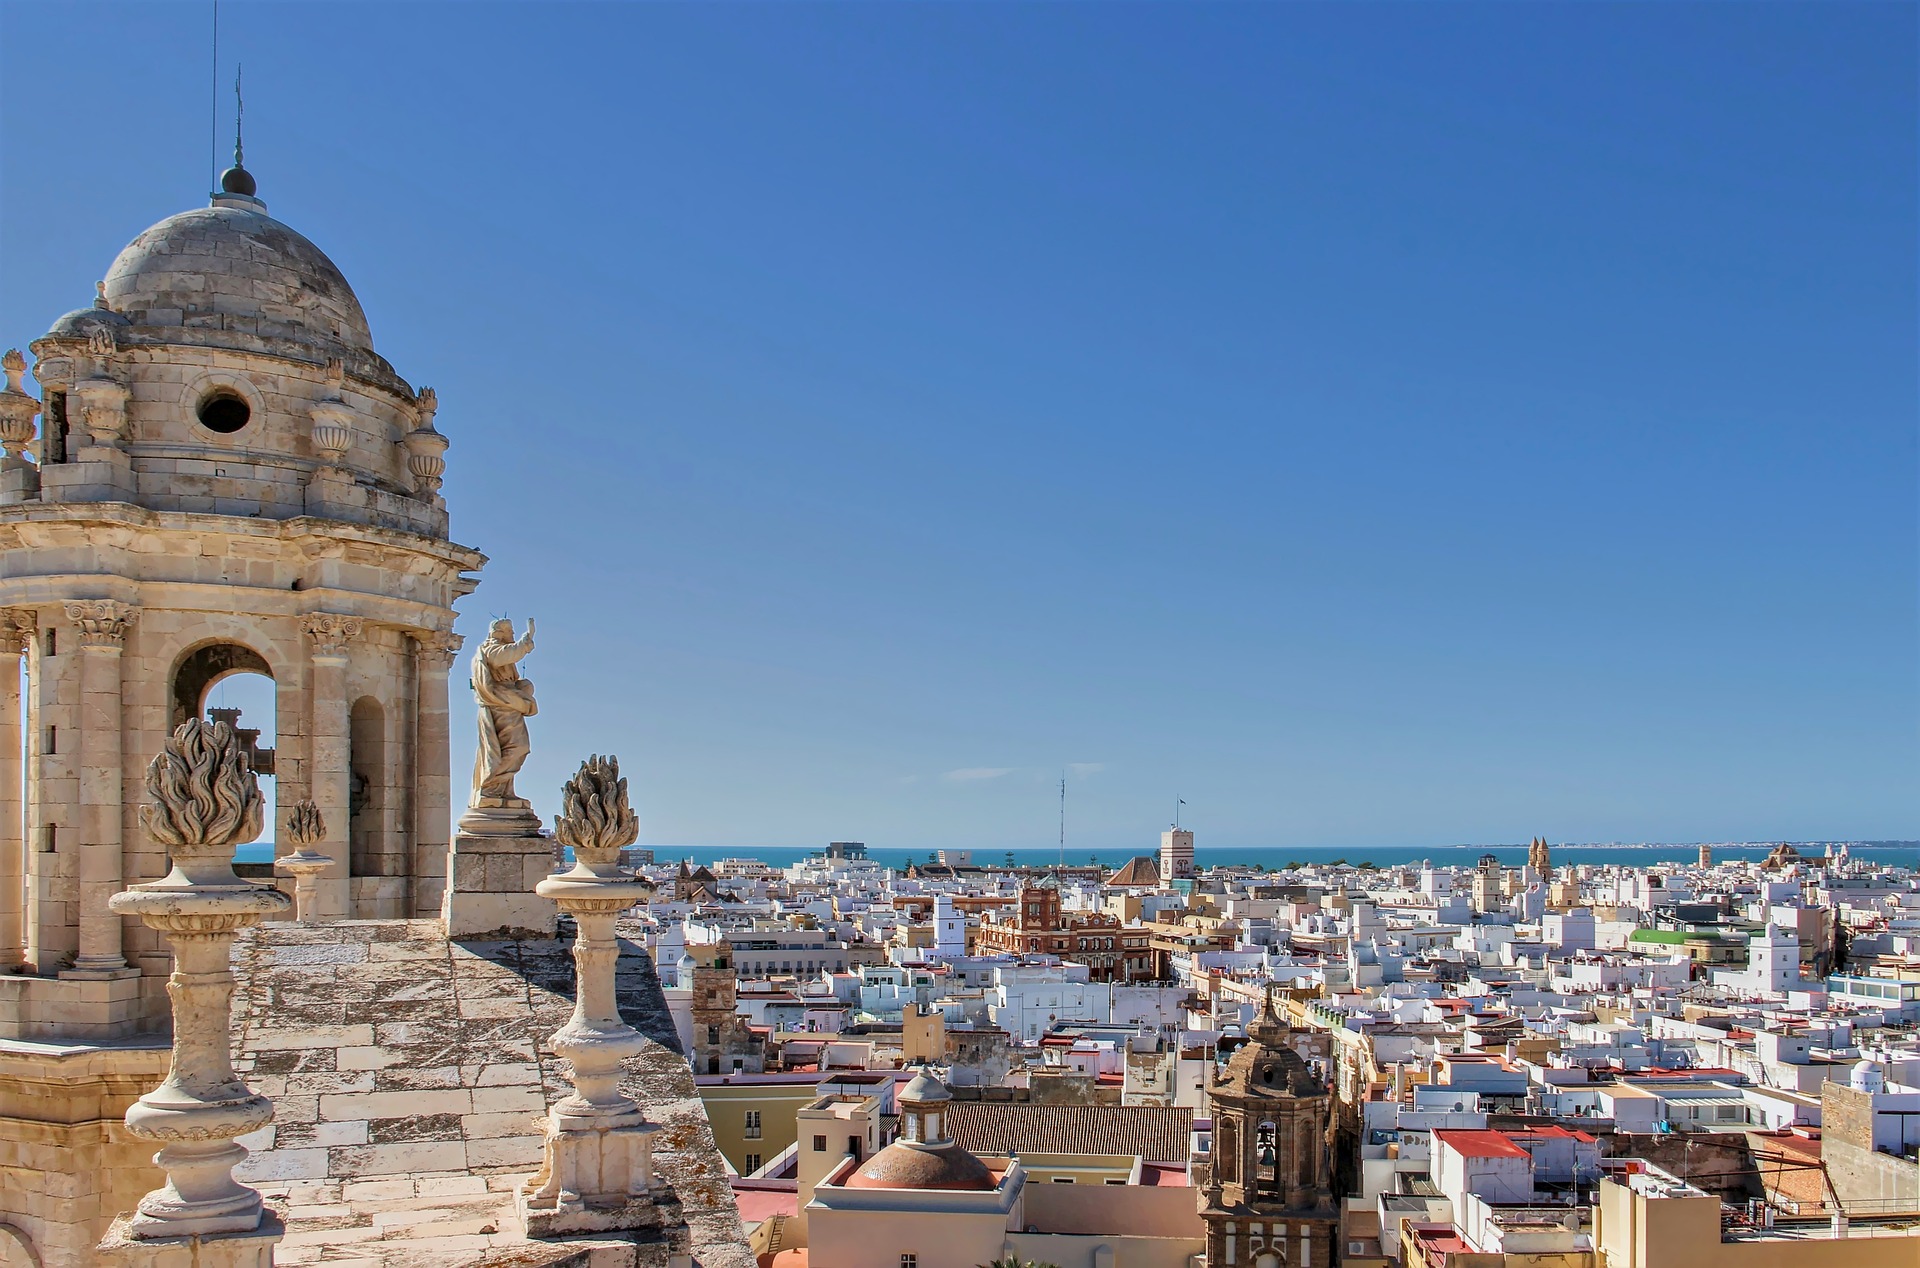 La crisis de 'habitabilidad' sacude el futuro como ciudad de Cádiz mientras el precio de la vivienda sigue disparándose